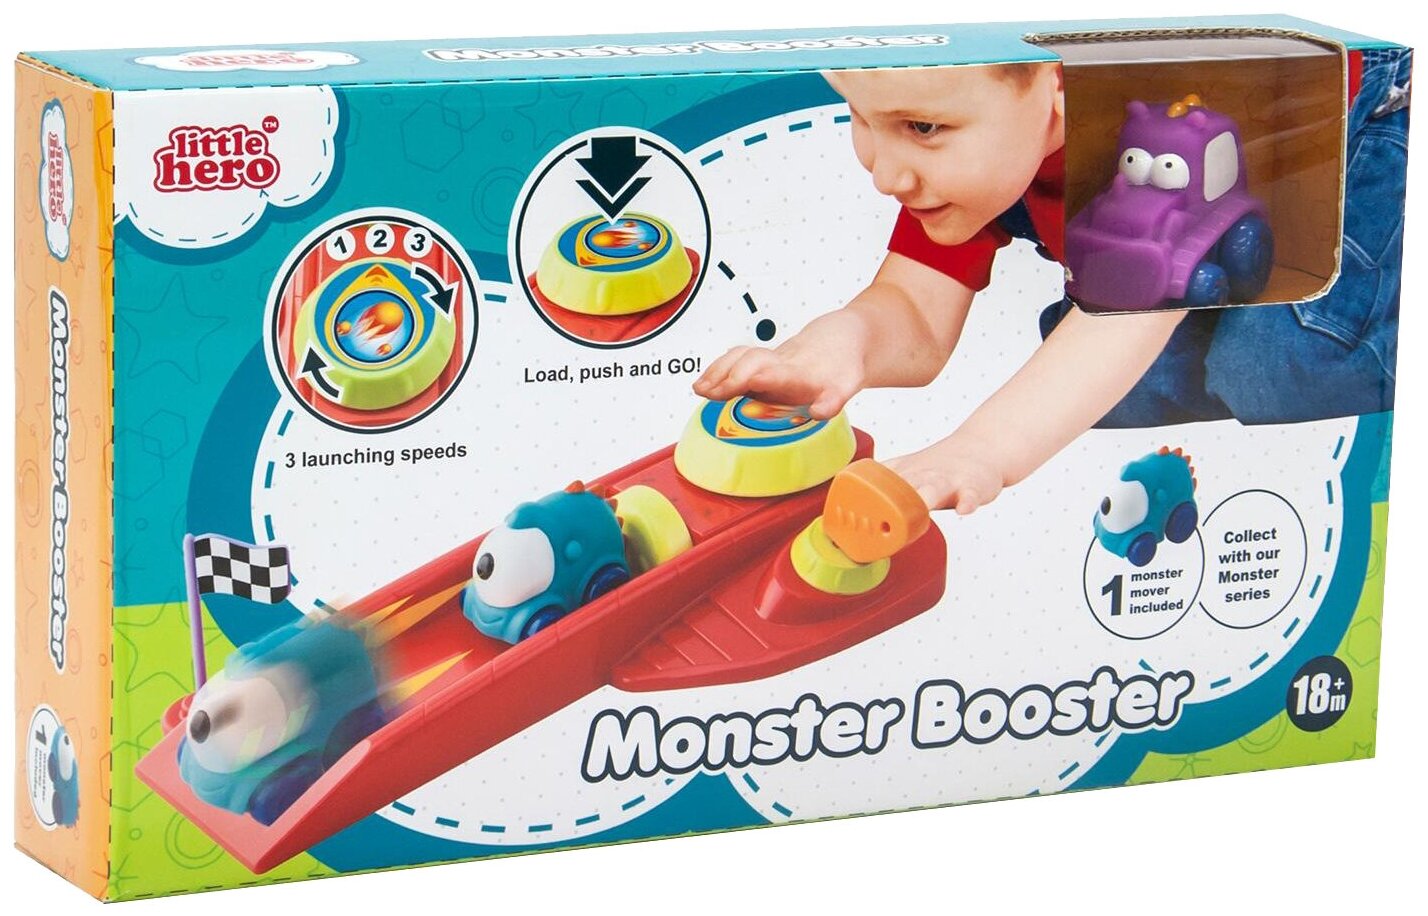 Трек Little hero Monster booster (9014A)